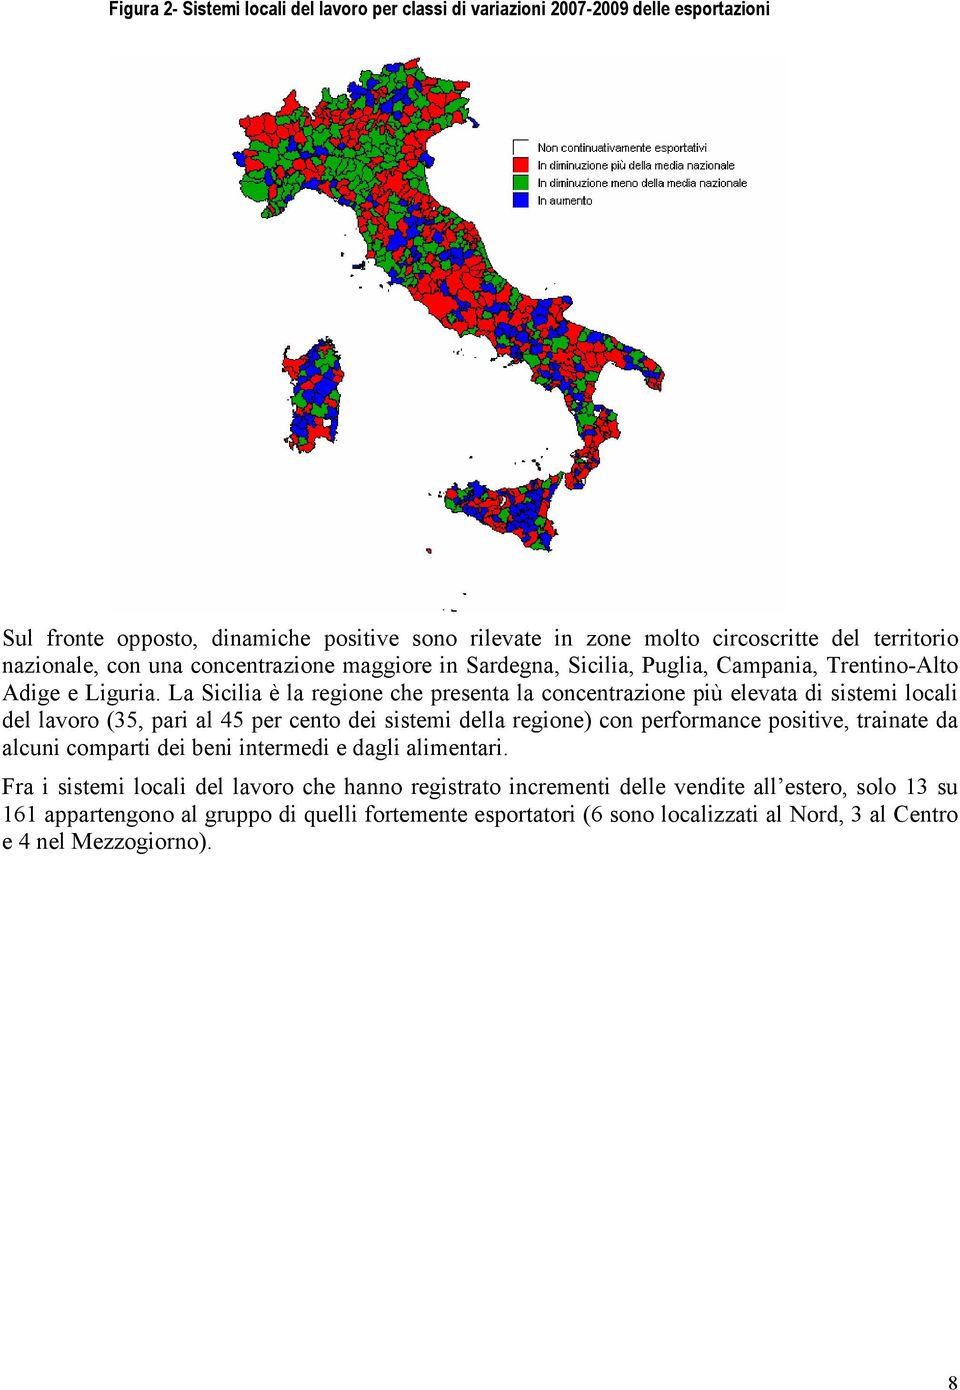 La Sicilia è la regione che presenta la concentrazione più elevata di sistemi locali del lavoro (35, pari al 45 per cento dei sistemi della regione) con performance positive, trainate da